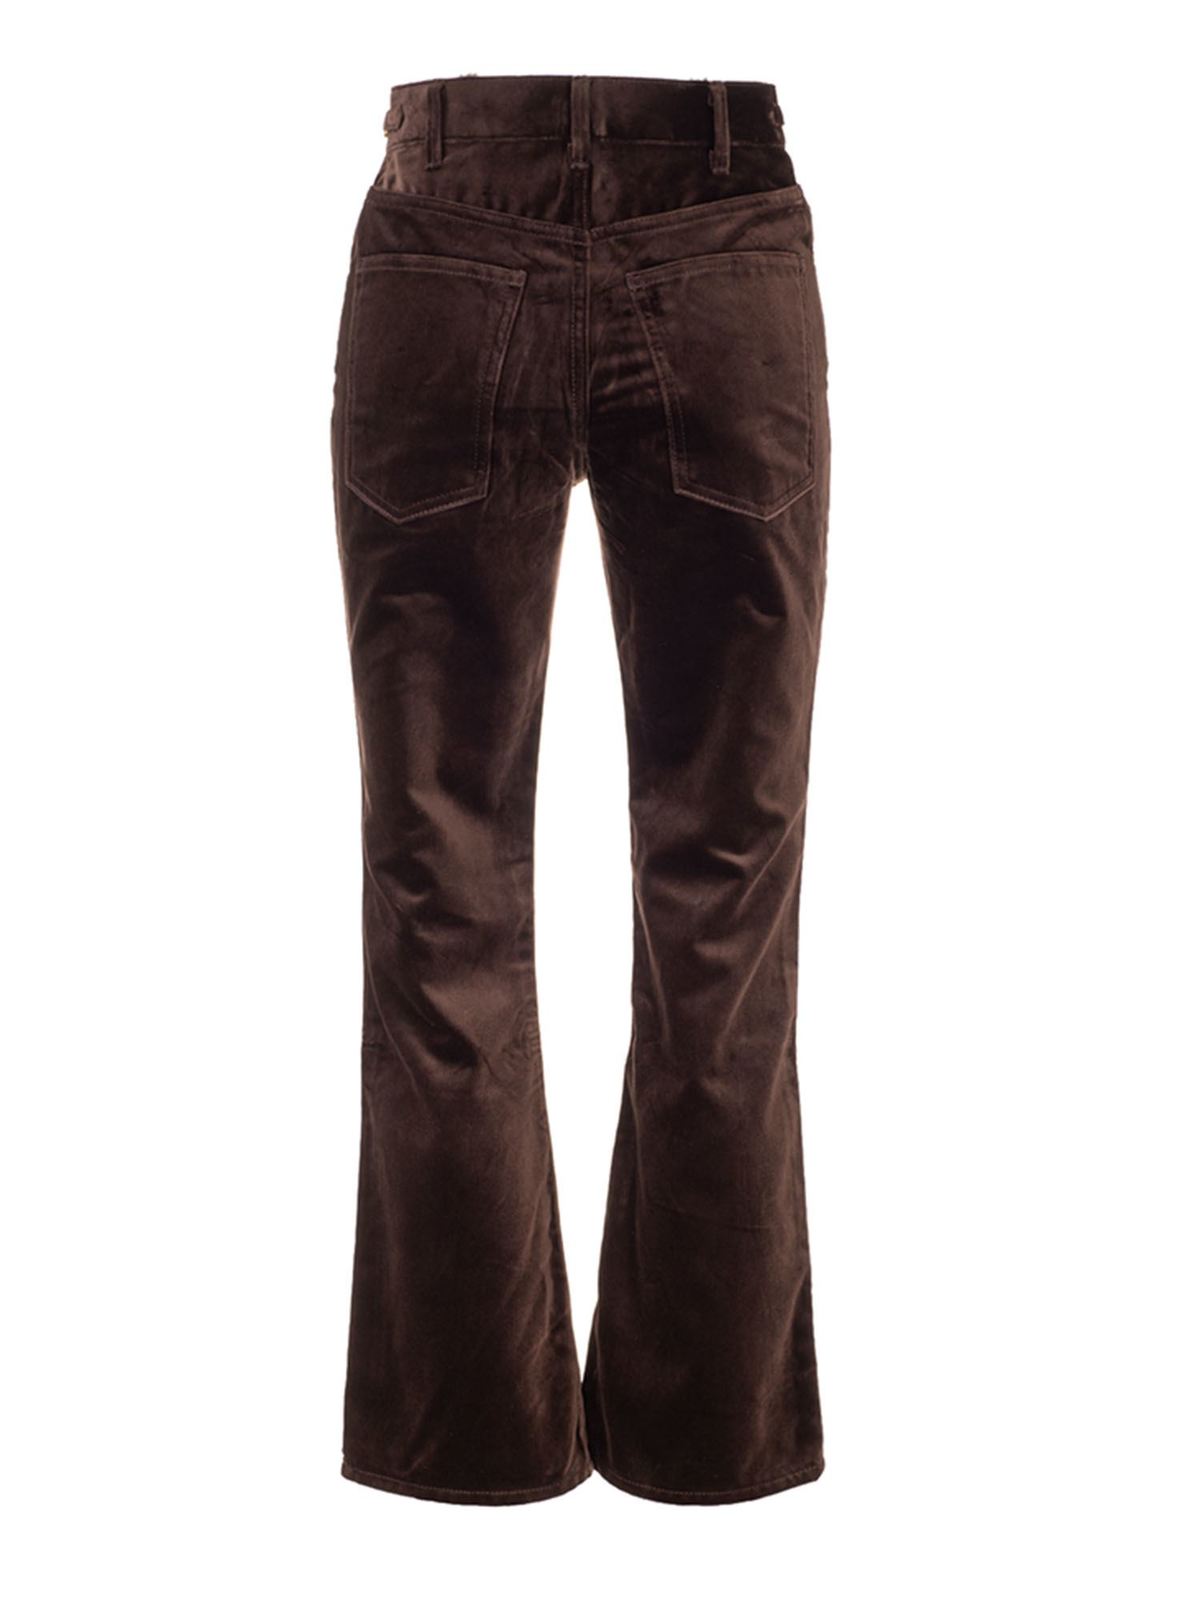 Jeans Céline - Dylan jeans brown - 2N457075K19BR | Shop online at iKRIX